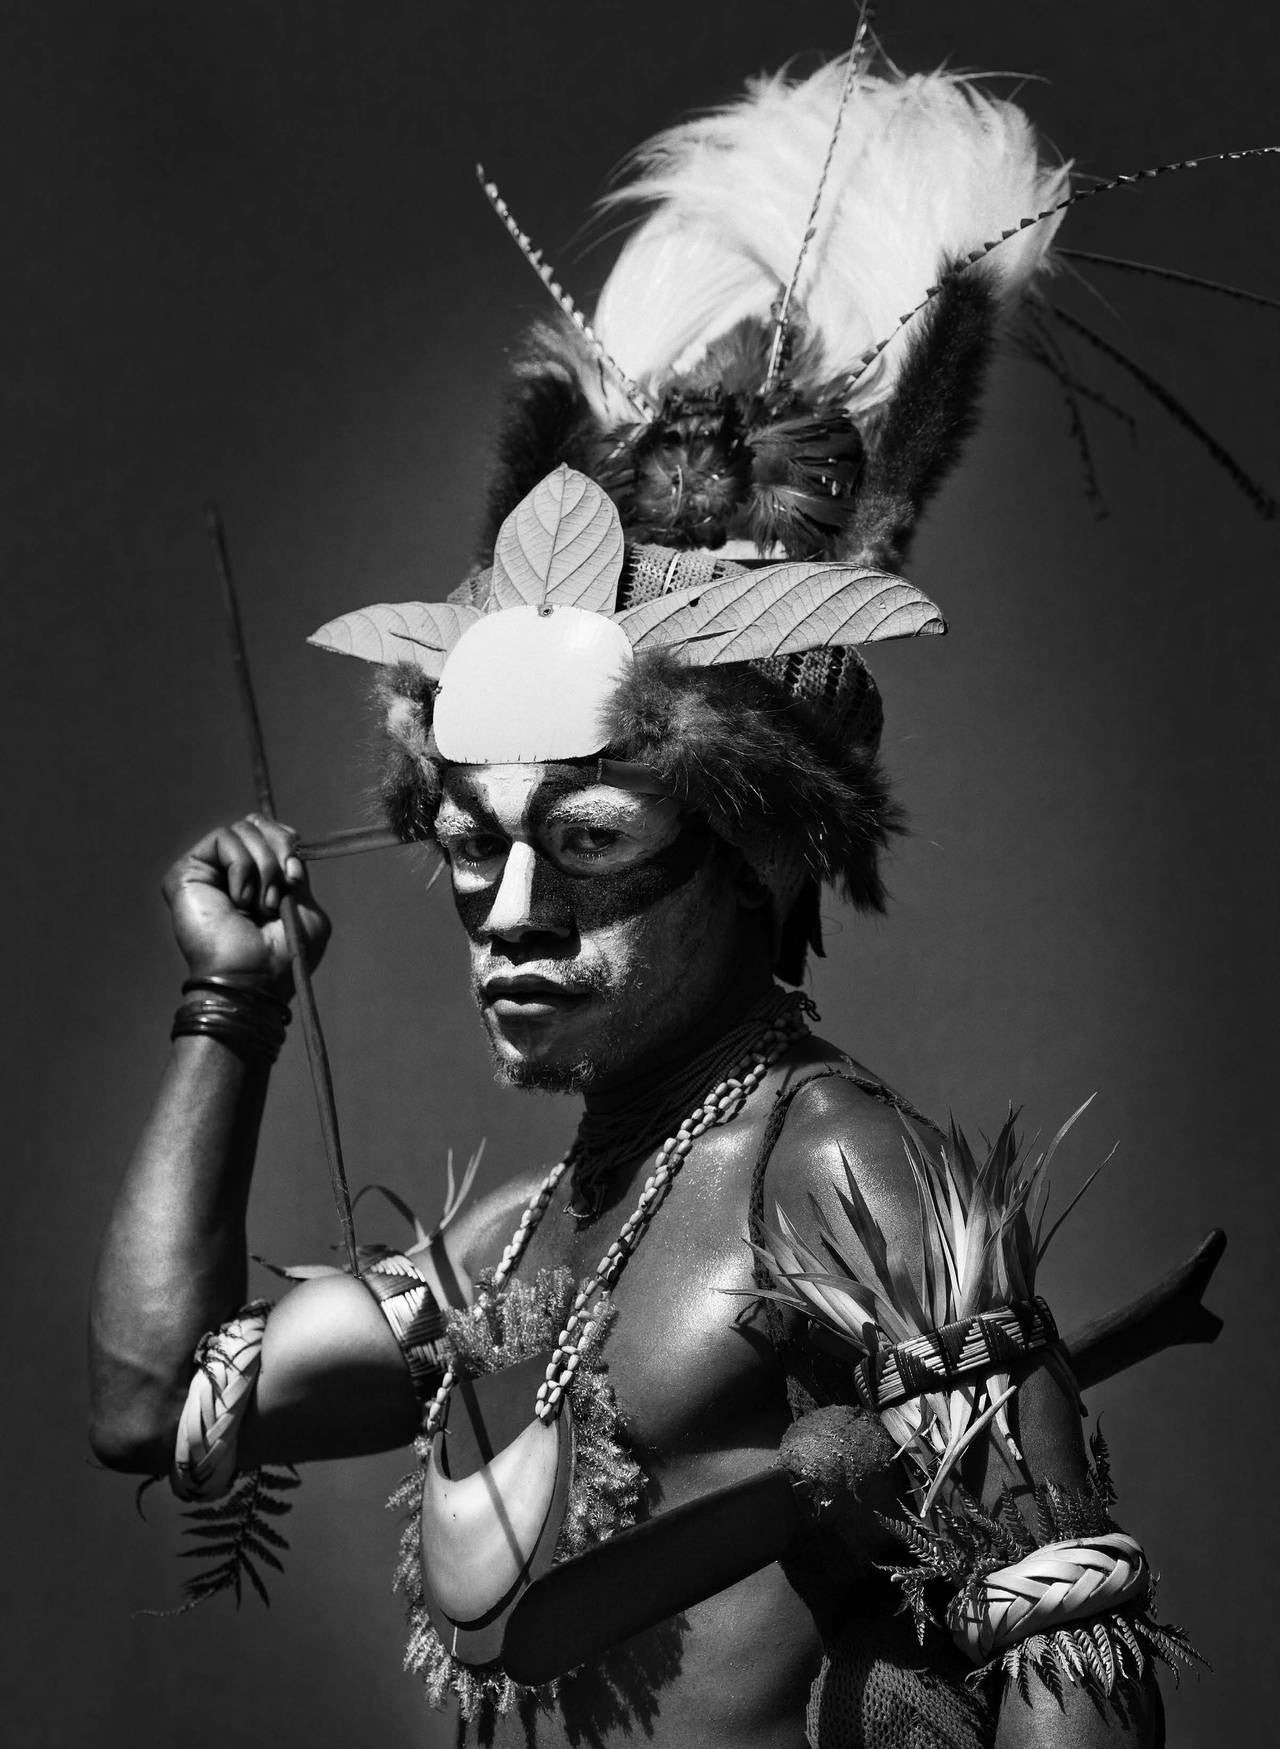 Участник фестиваля Синг-Синг, Маунт-Хаген, Папуа-Новая Гвинея, 2008. Автор Себастьян Сальгадо